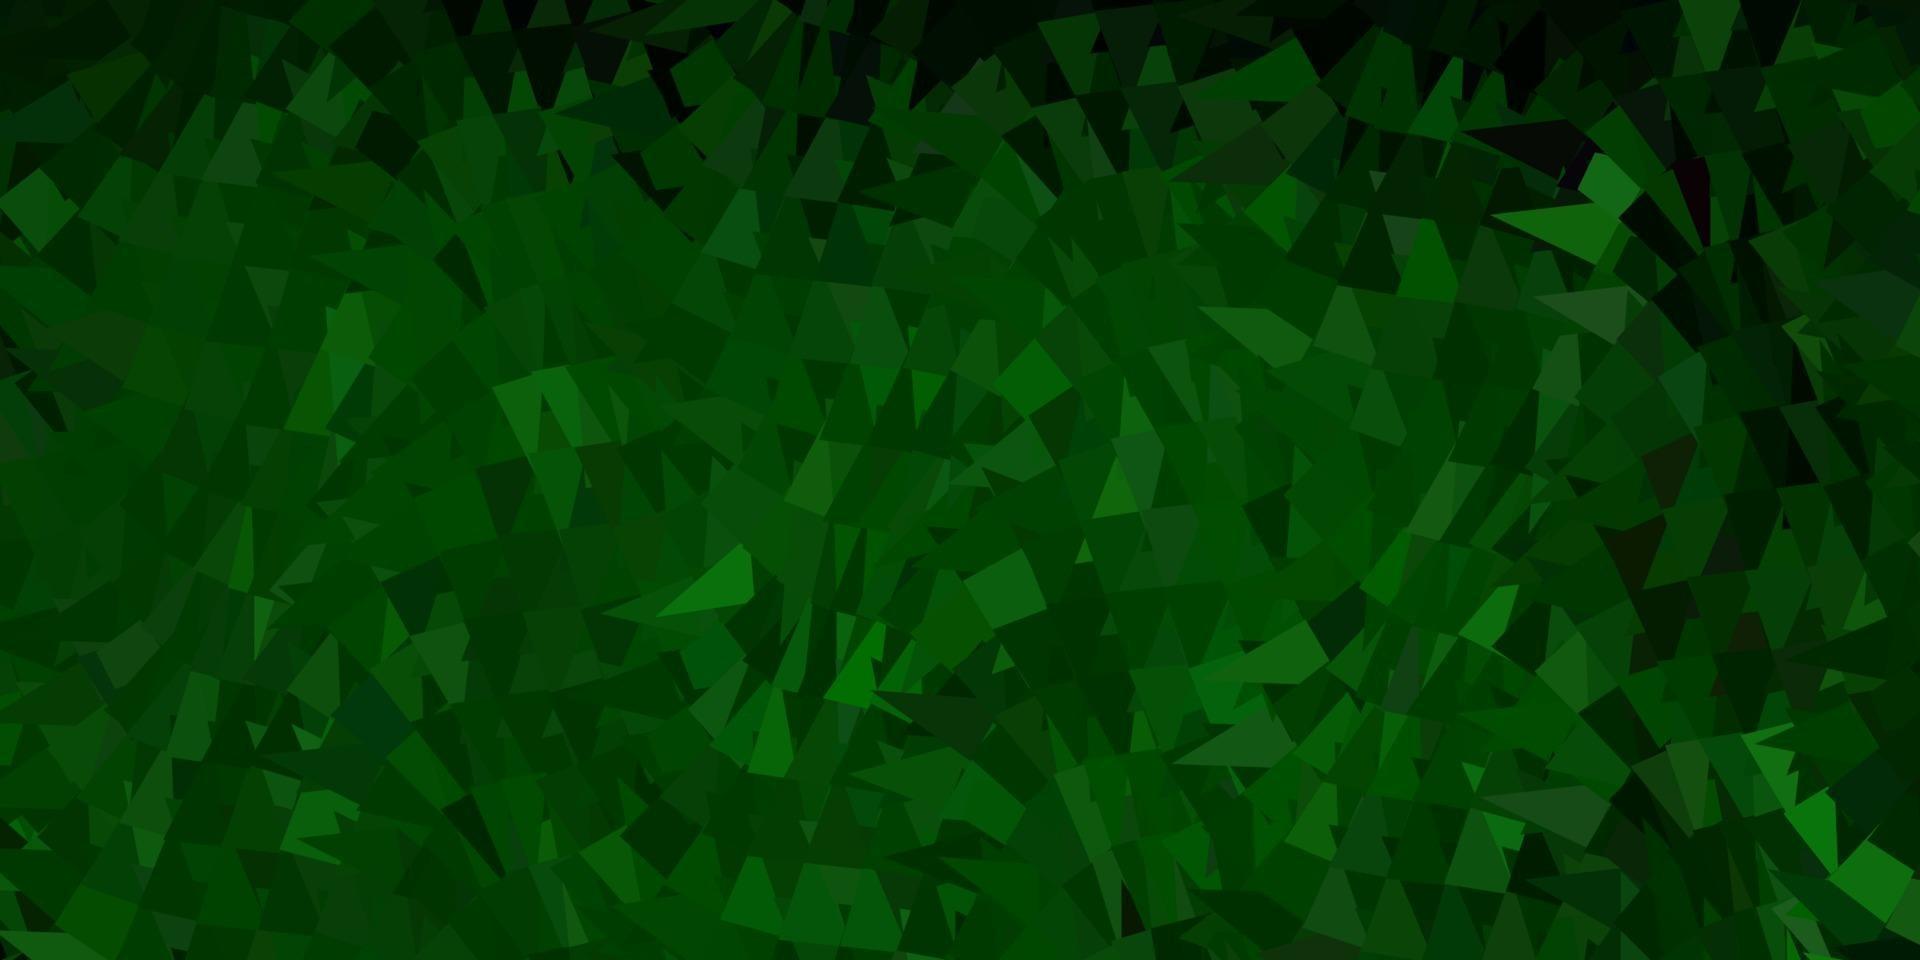 cenário de triângulo abstrato de vetor verde escuro e vermelho.